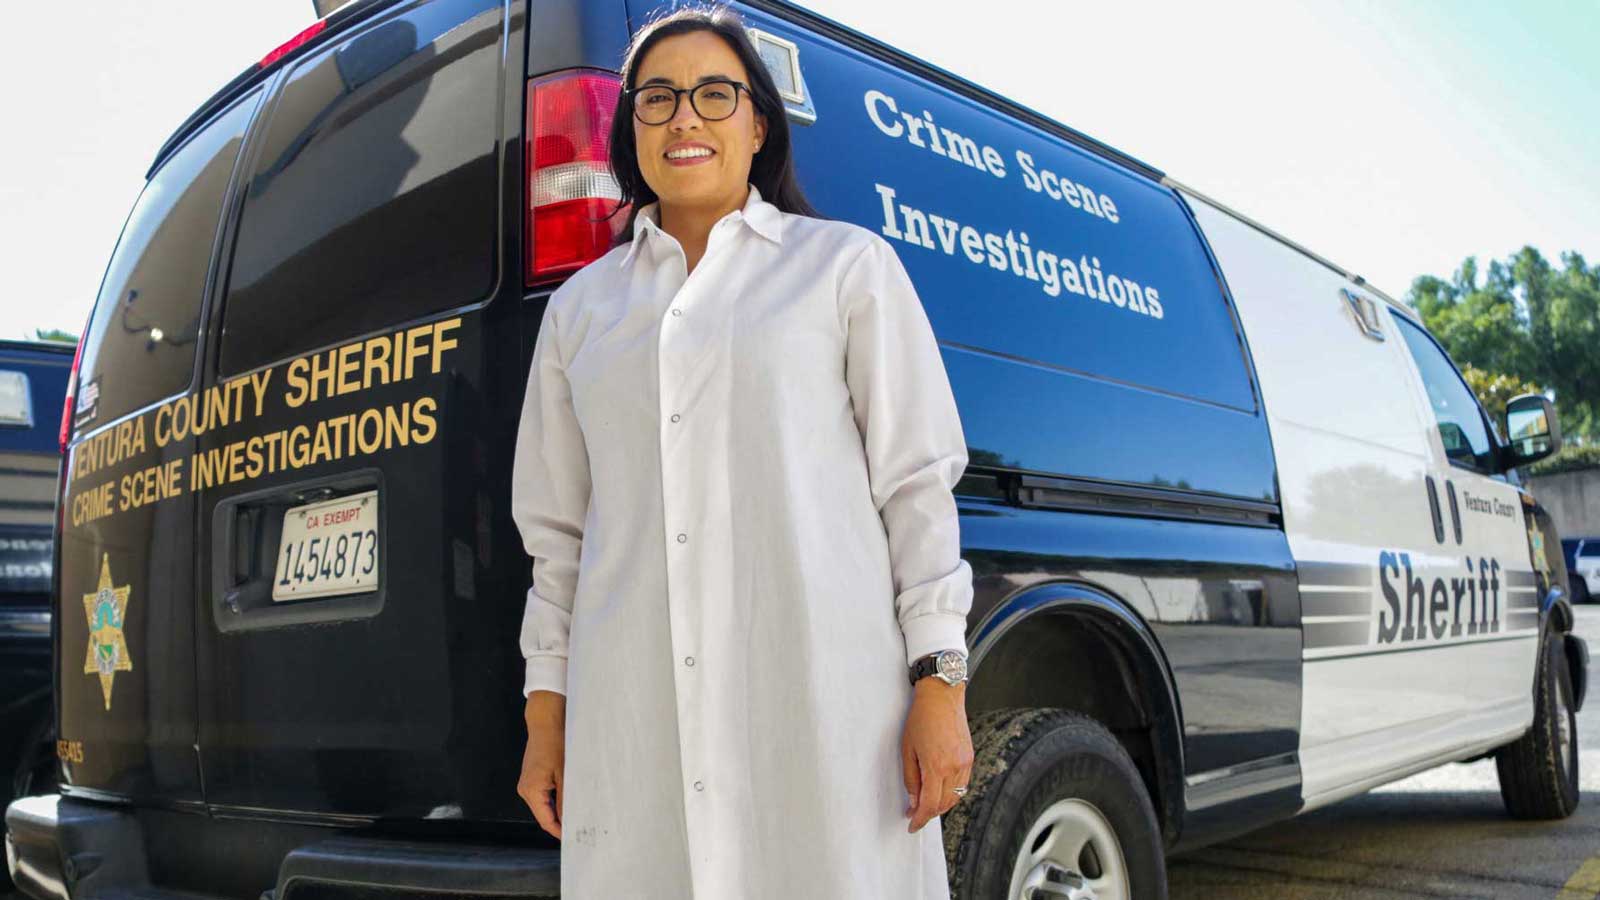 Biotechnology & Bioinformatics alumna supervises crime-scene investigations